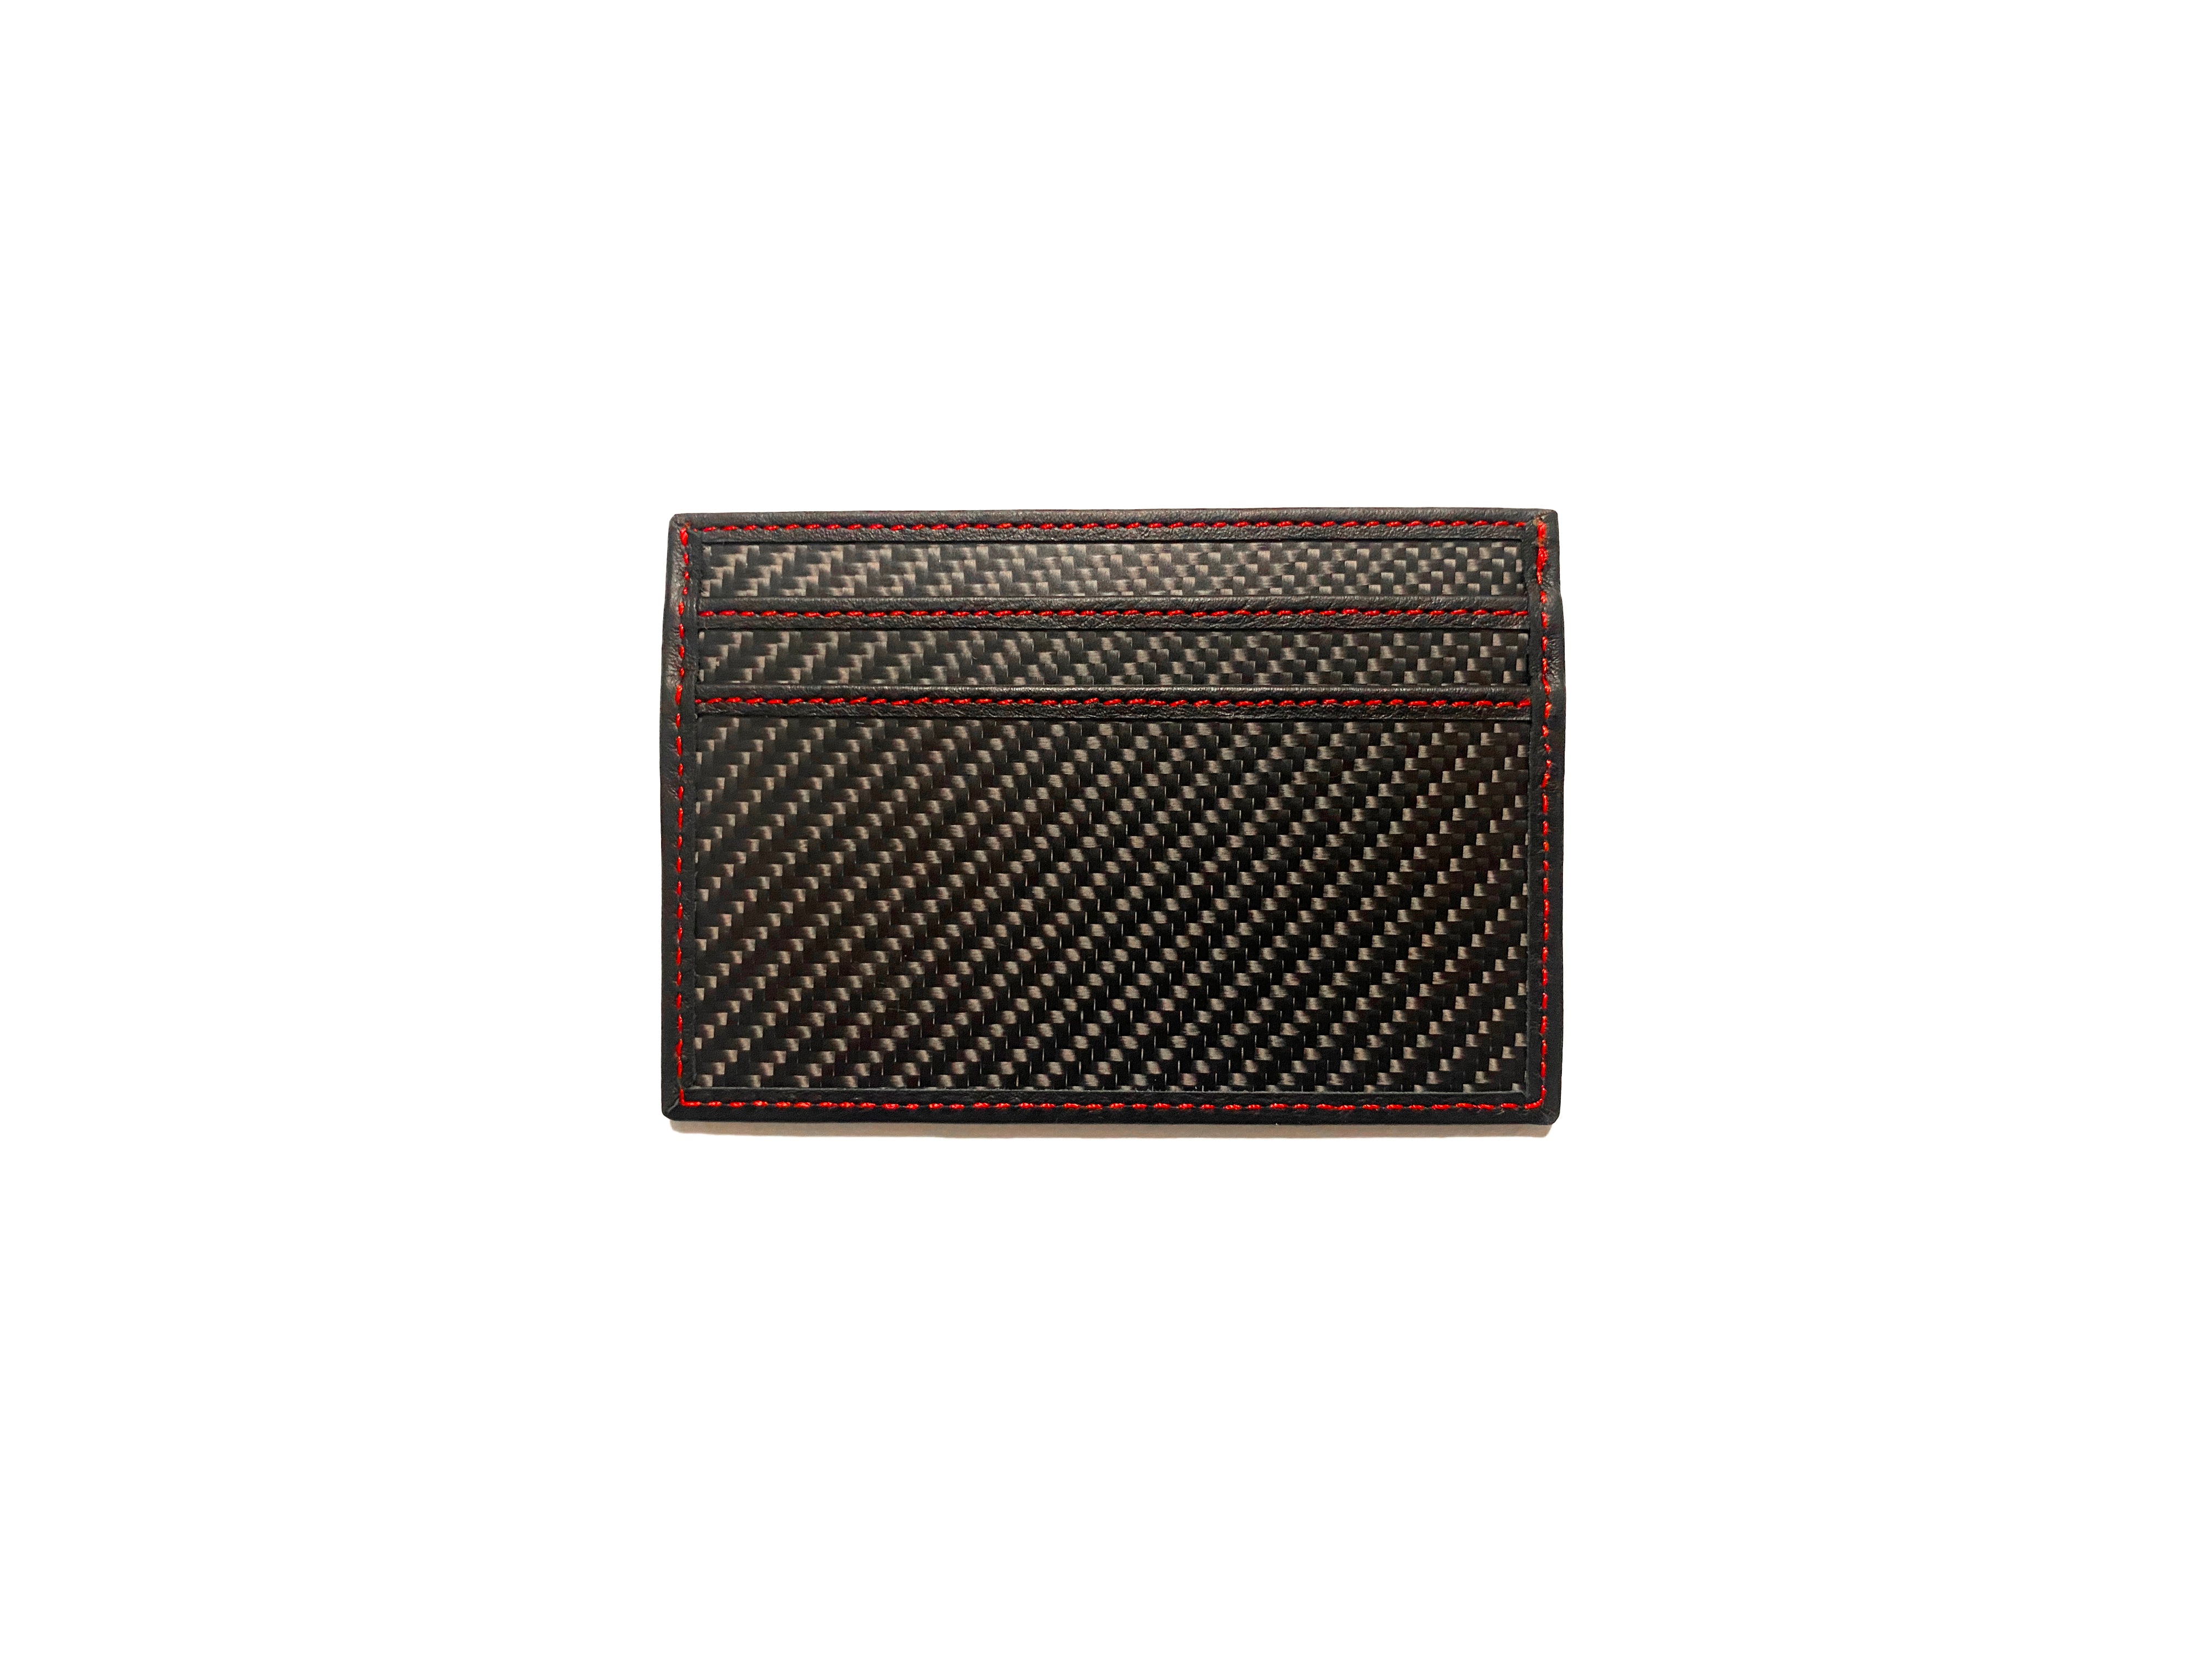 P1 Carbon Fiber Card Holder Black/Red